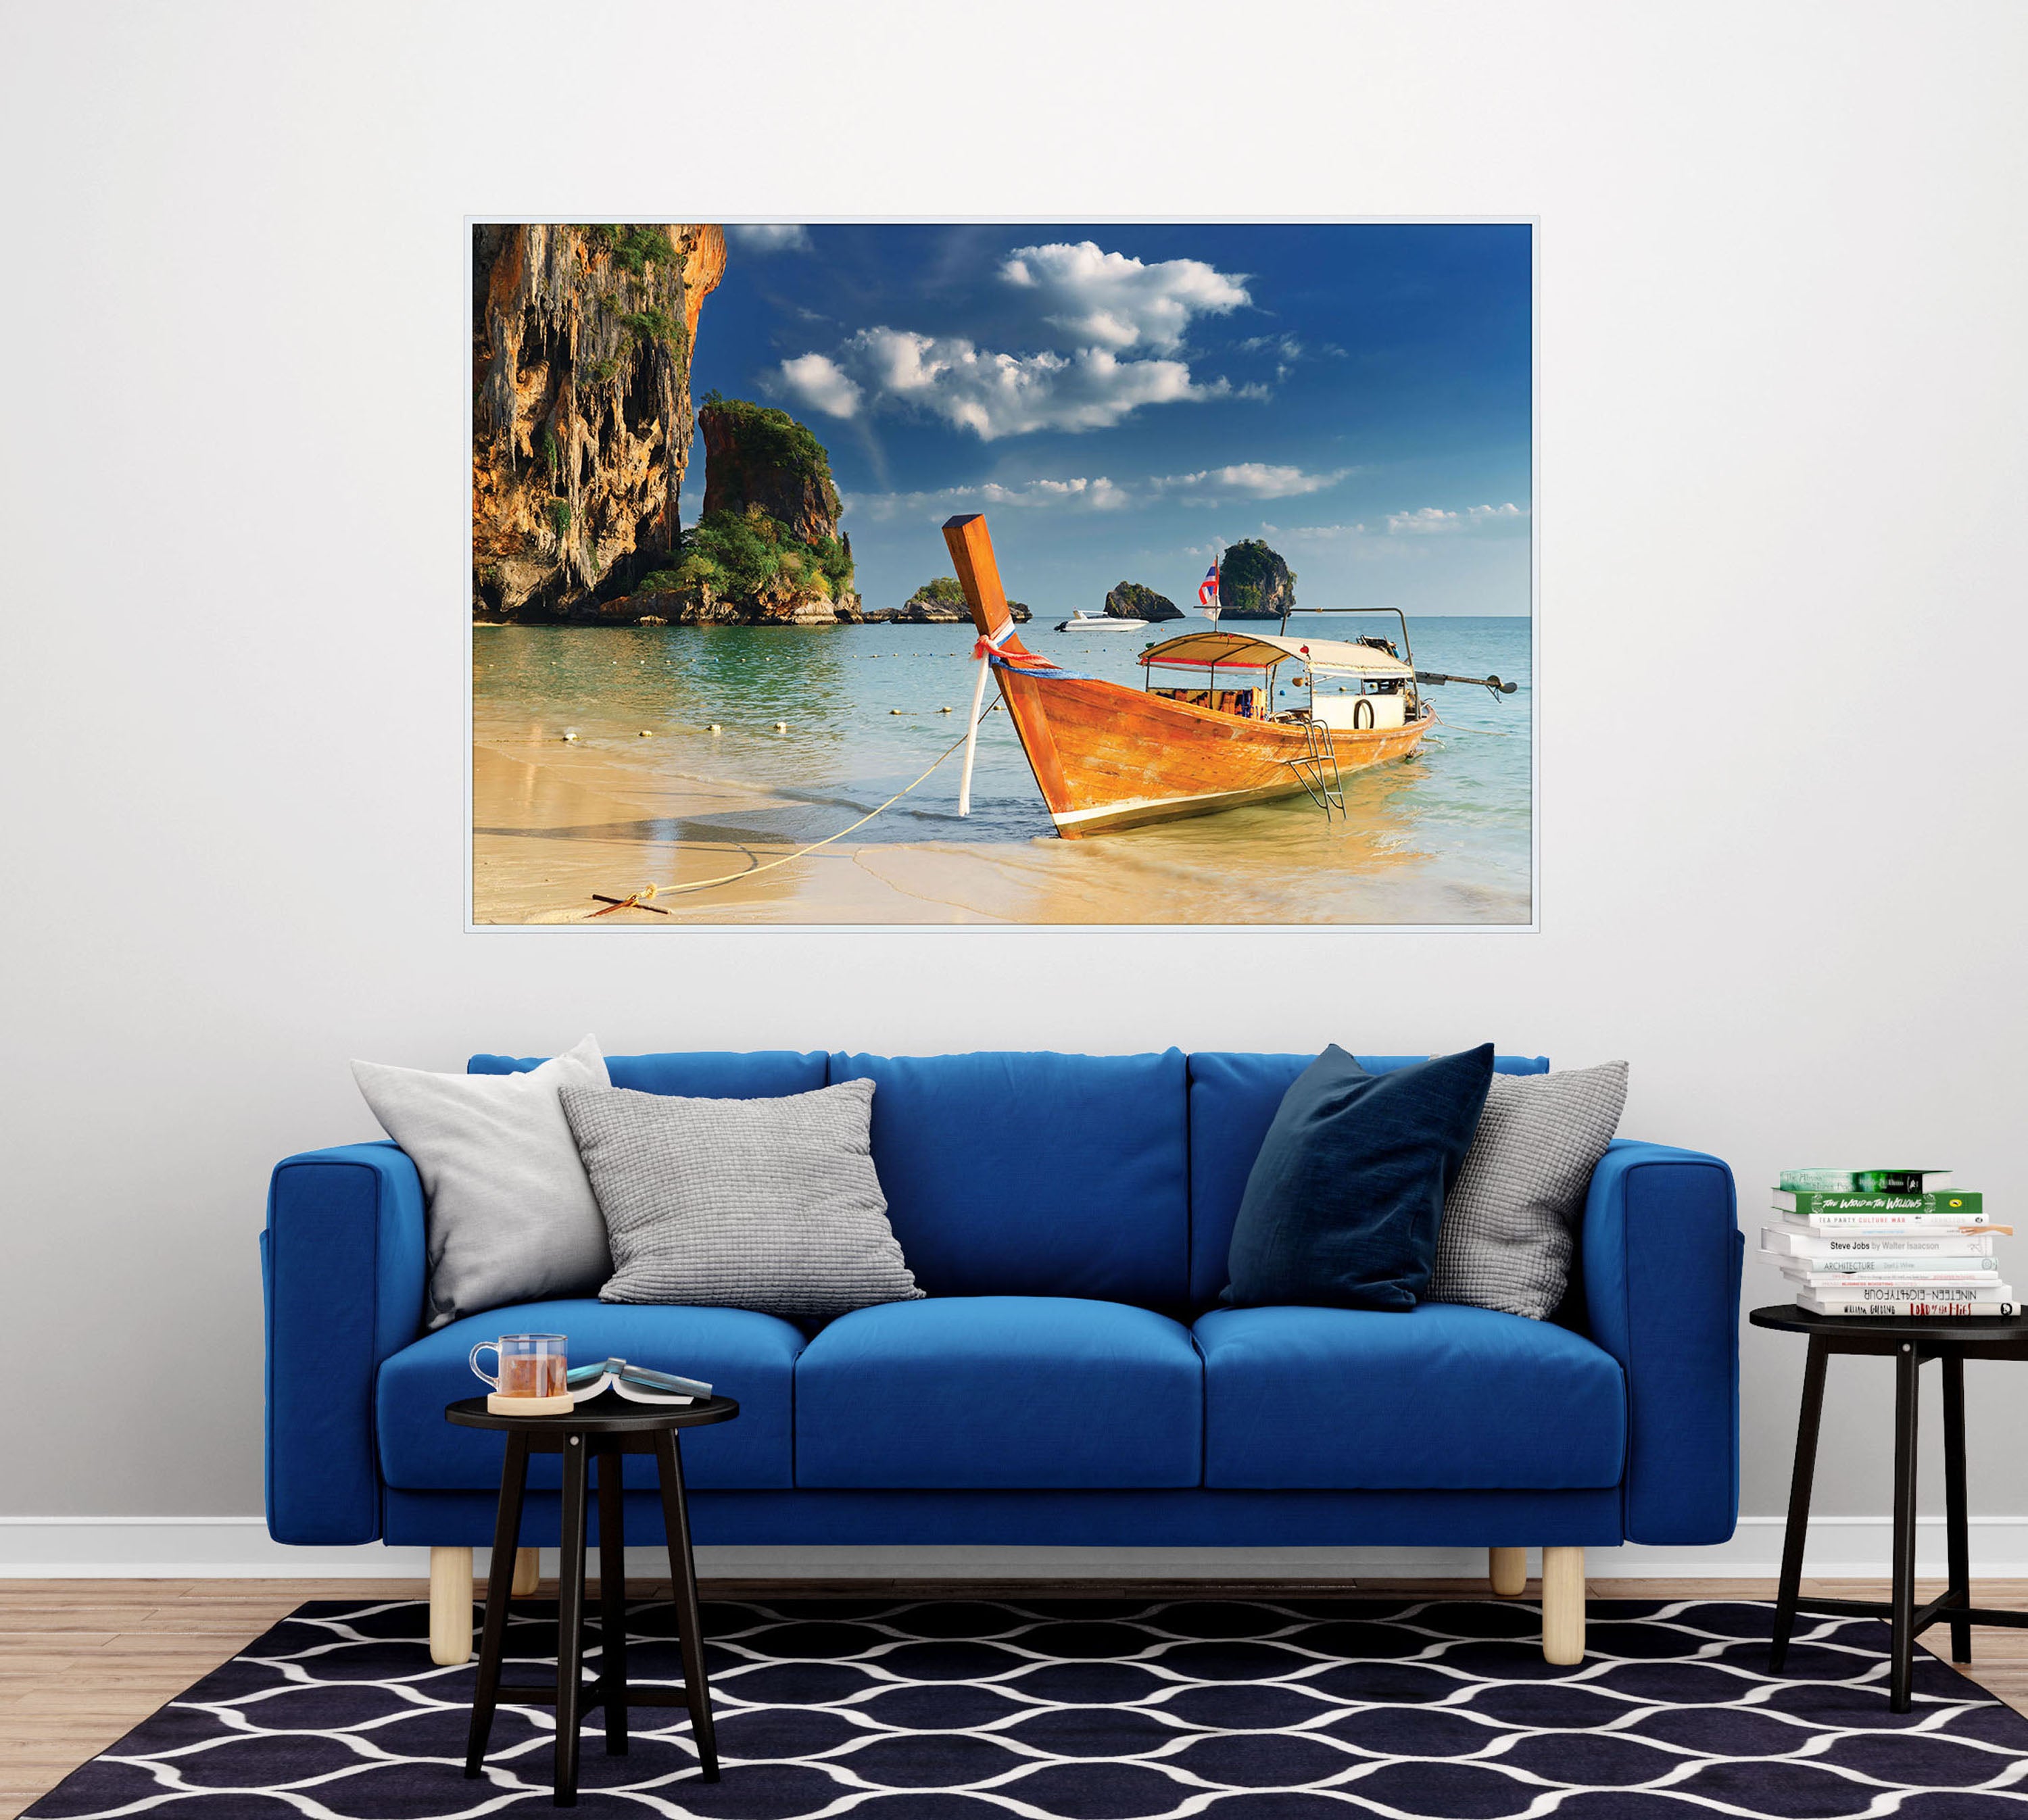 GM011F Grace & Gardenia Tropical Cove Premium Peel and Stick Mural 69 inch wide x 46 inch height Blue Orange Beige